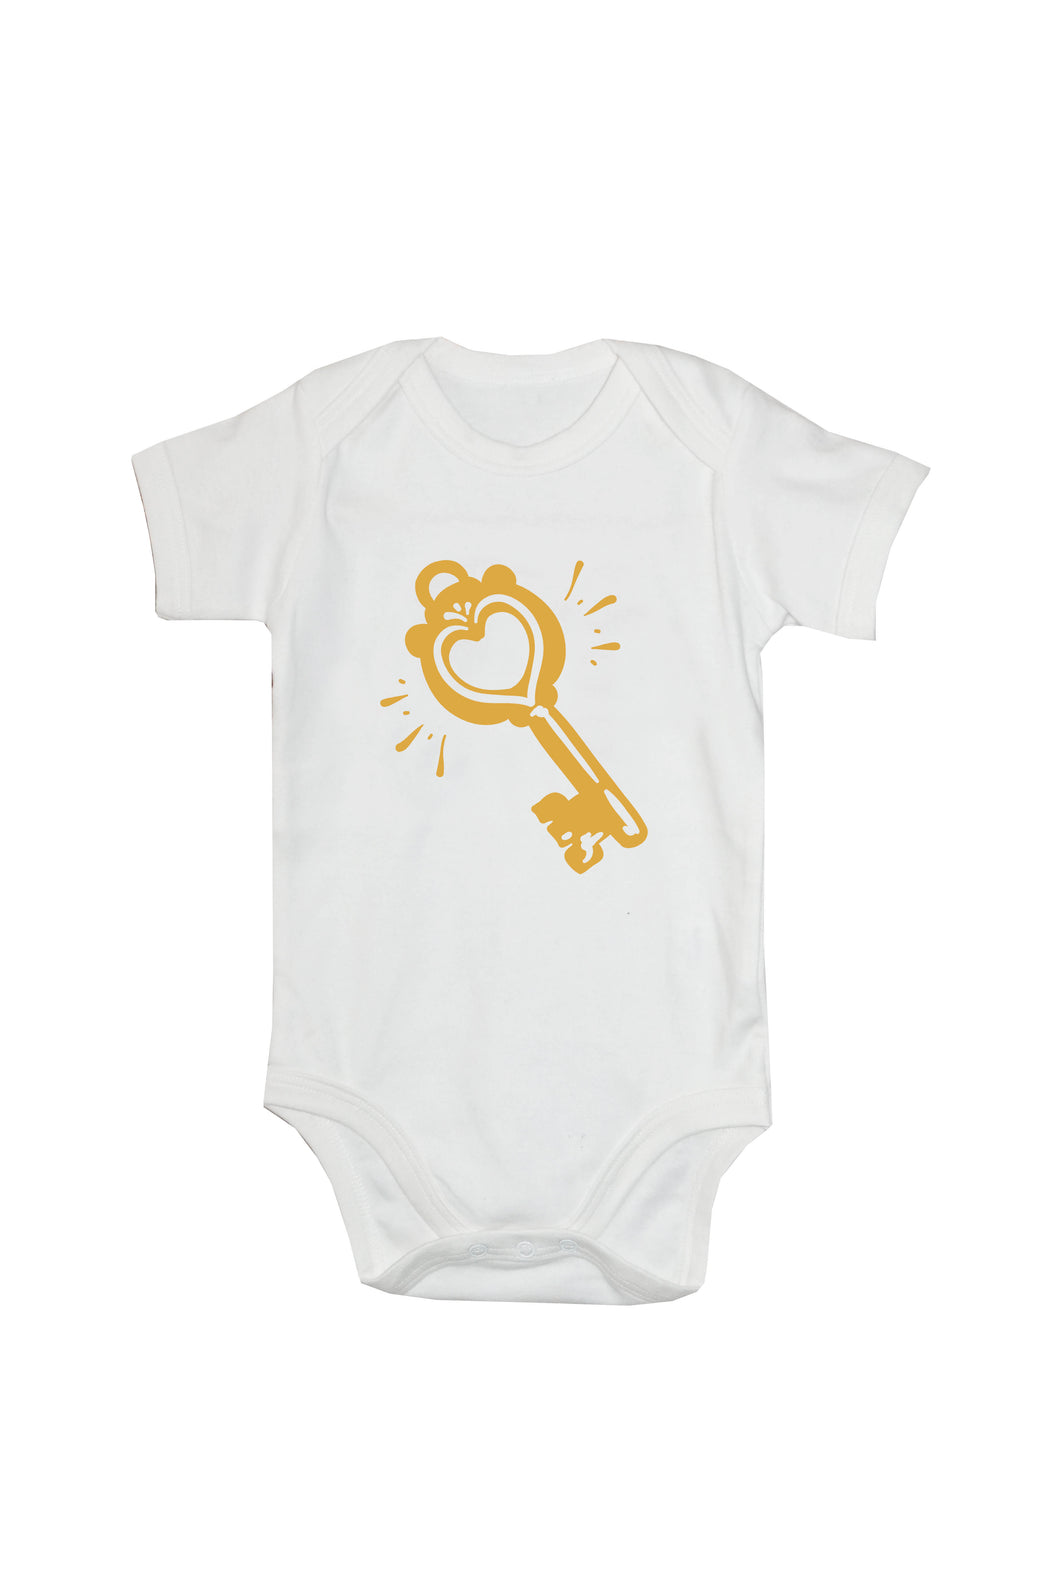 'Key' Baby Vest